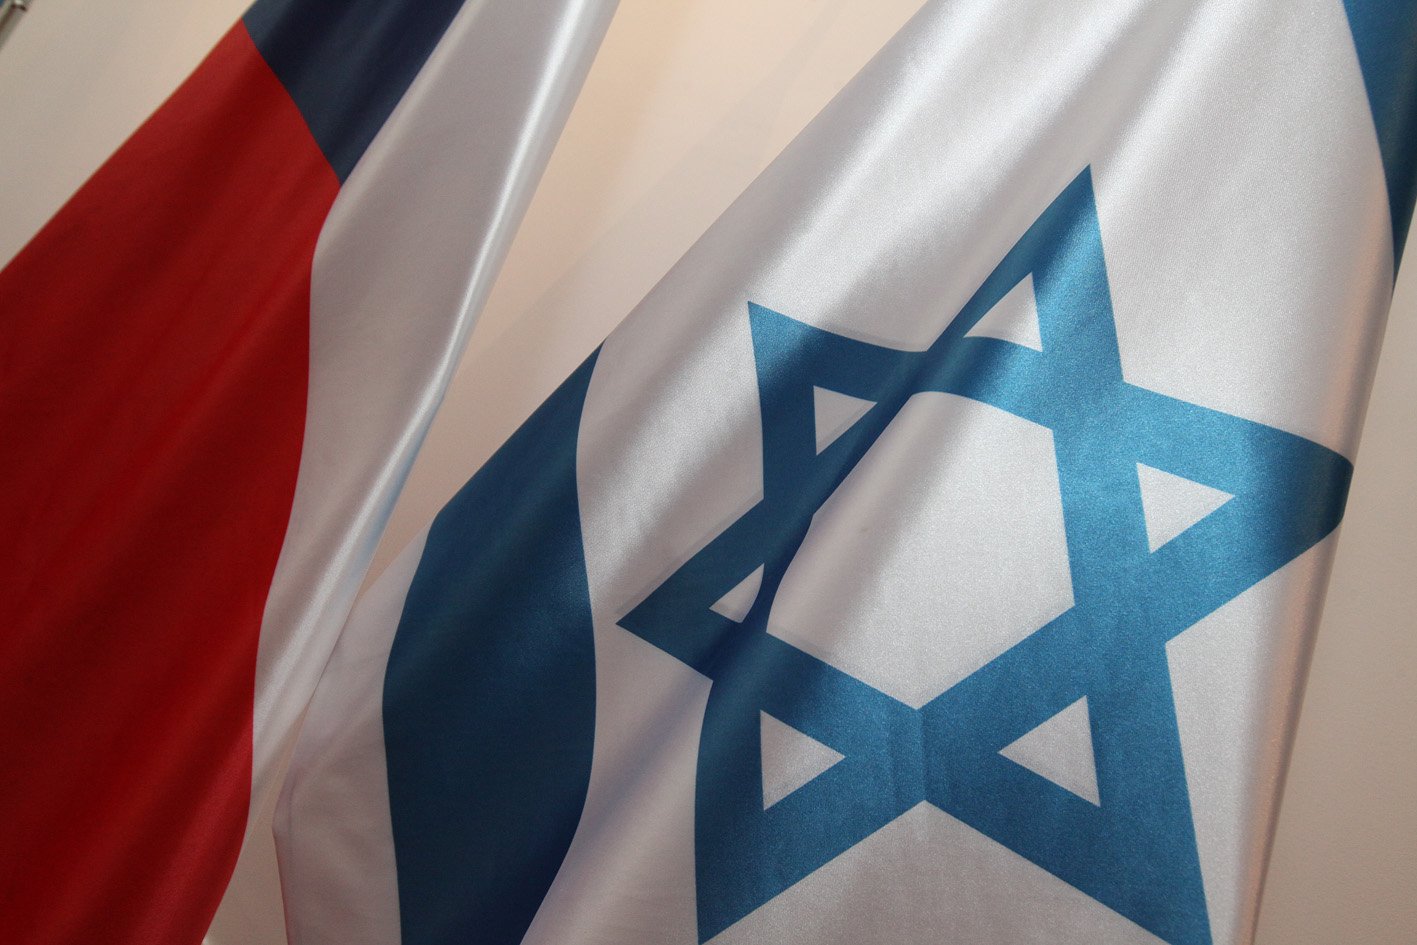 Sněmovna vyzvala vládu k přesunutí ambasády v Izraeli. Odsoudila také agresi hnutí Hamás